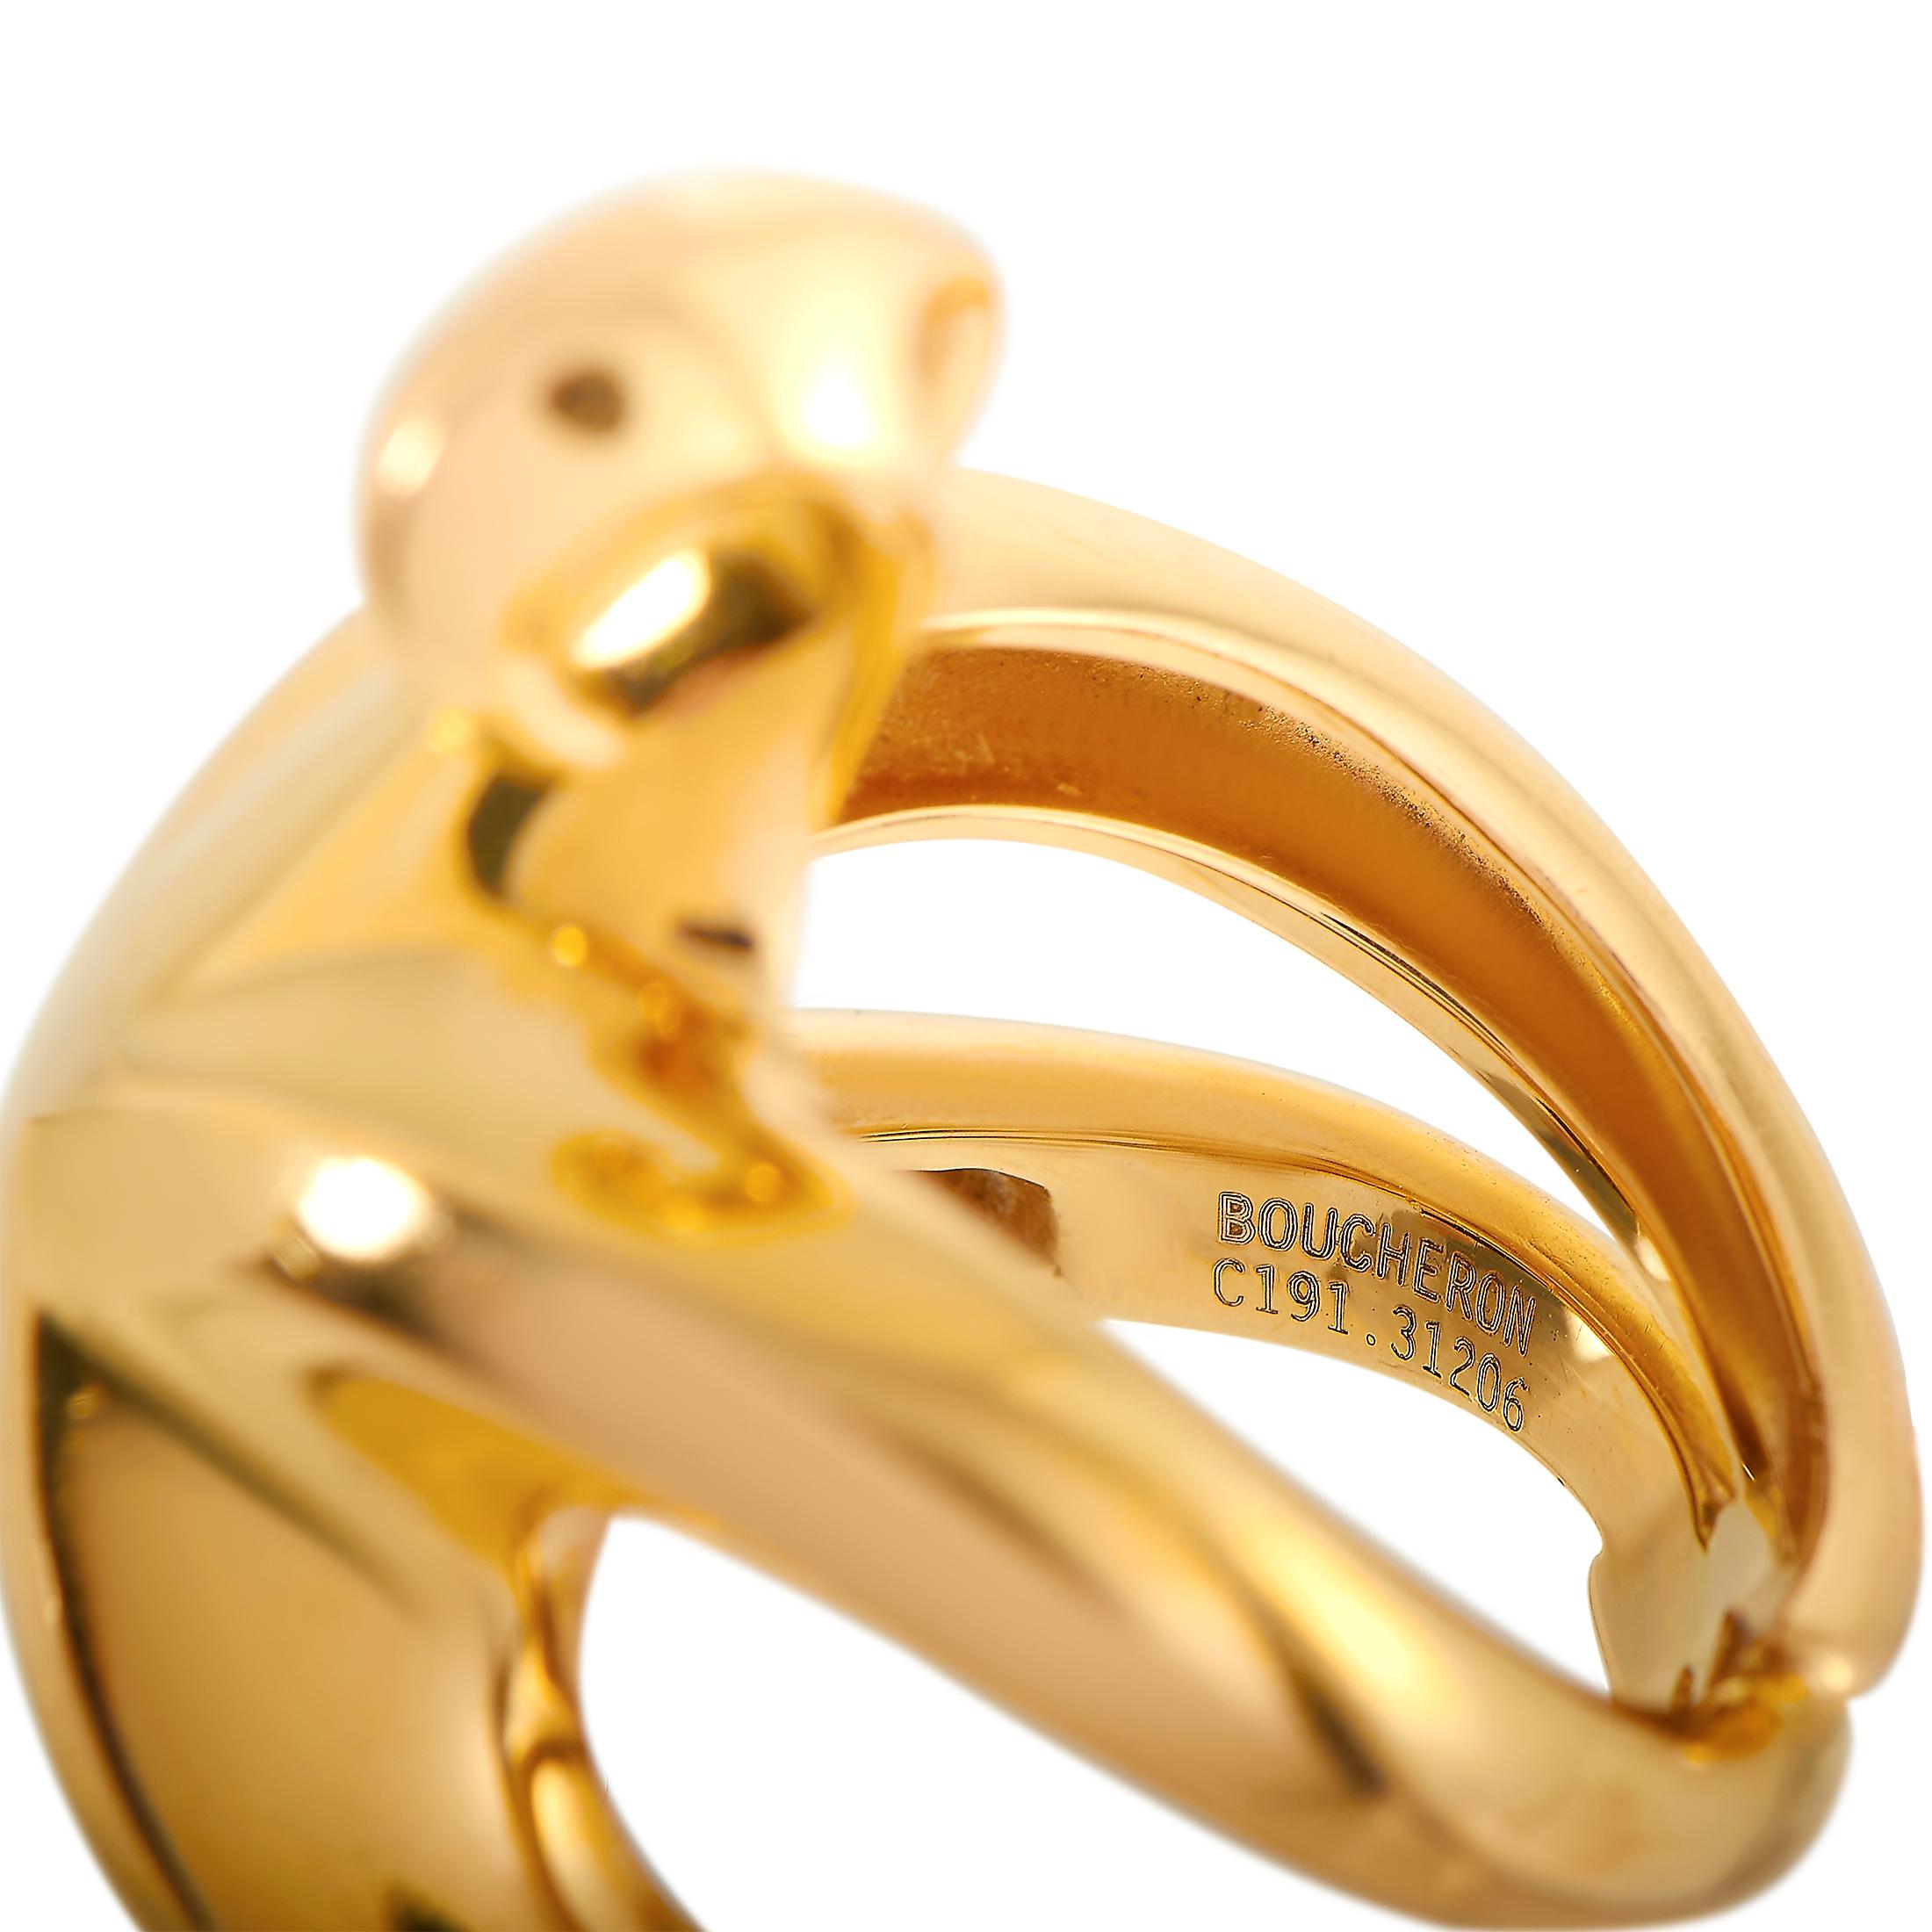 Boucheron 18 Karat Yellow Gold Ring 2